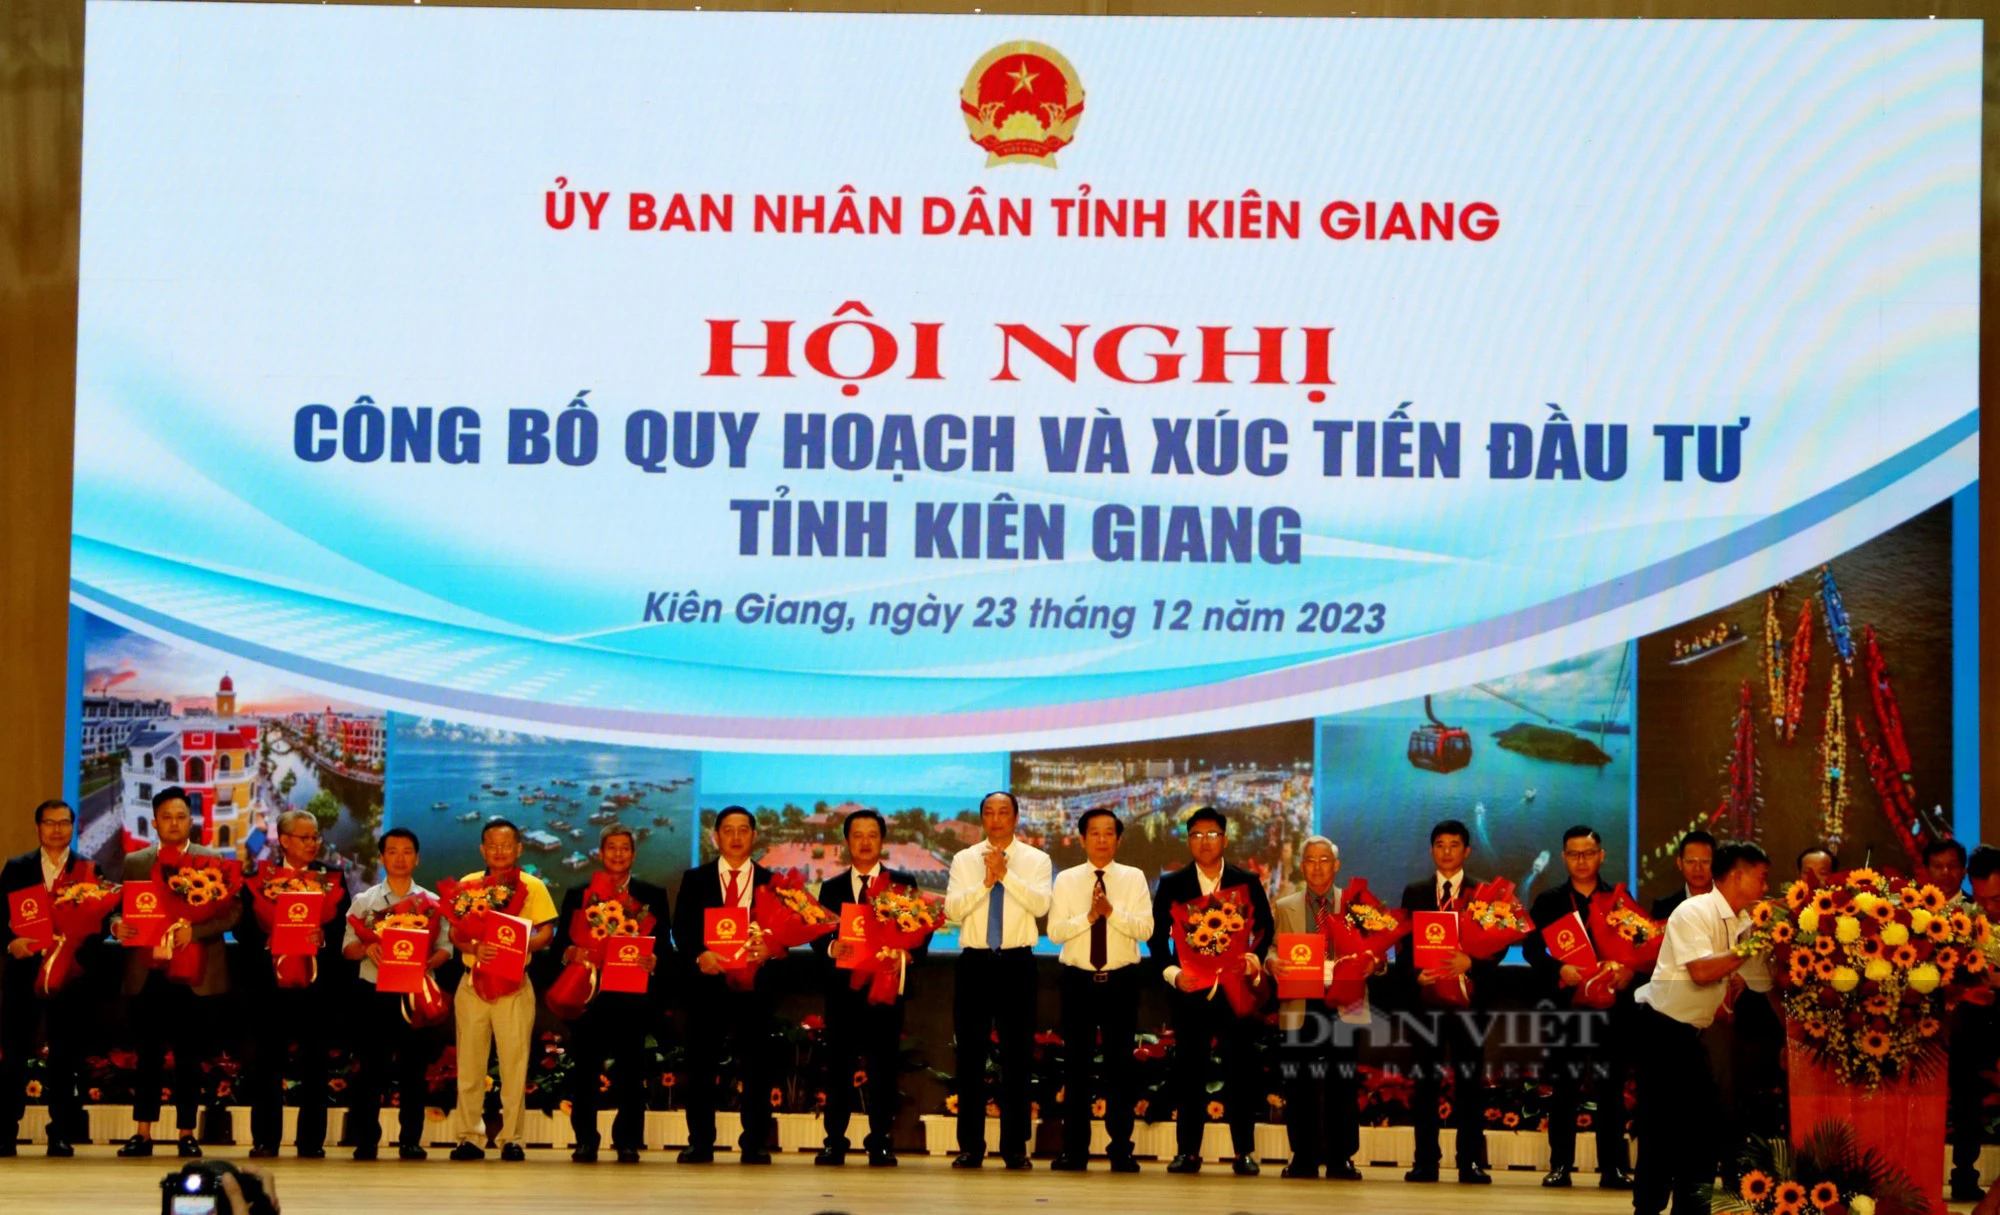 Phát triển Kiên Giang đến năm 2023 trở thành trung tâm kinh tế biển của quốc gia - Ảnh 3.